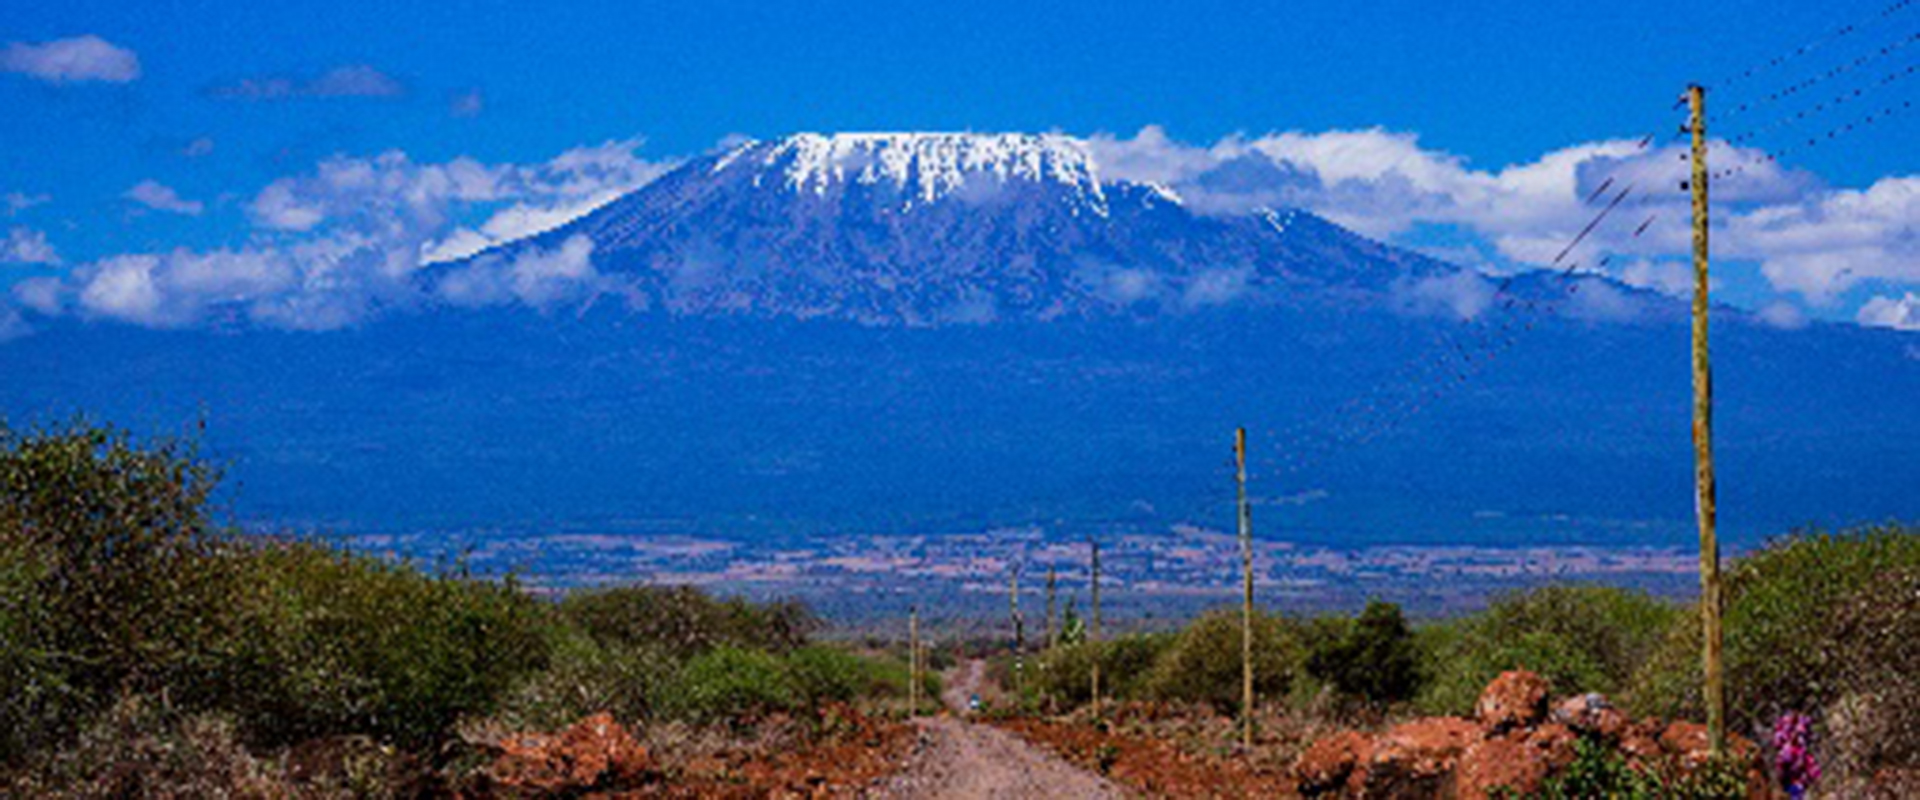 Kilimanjaro_larger